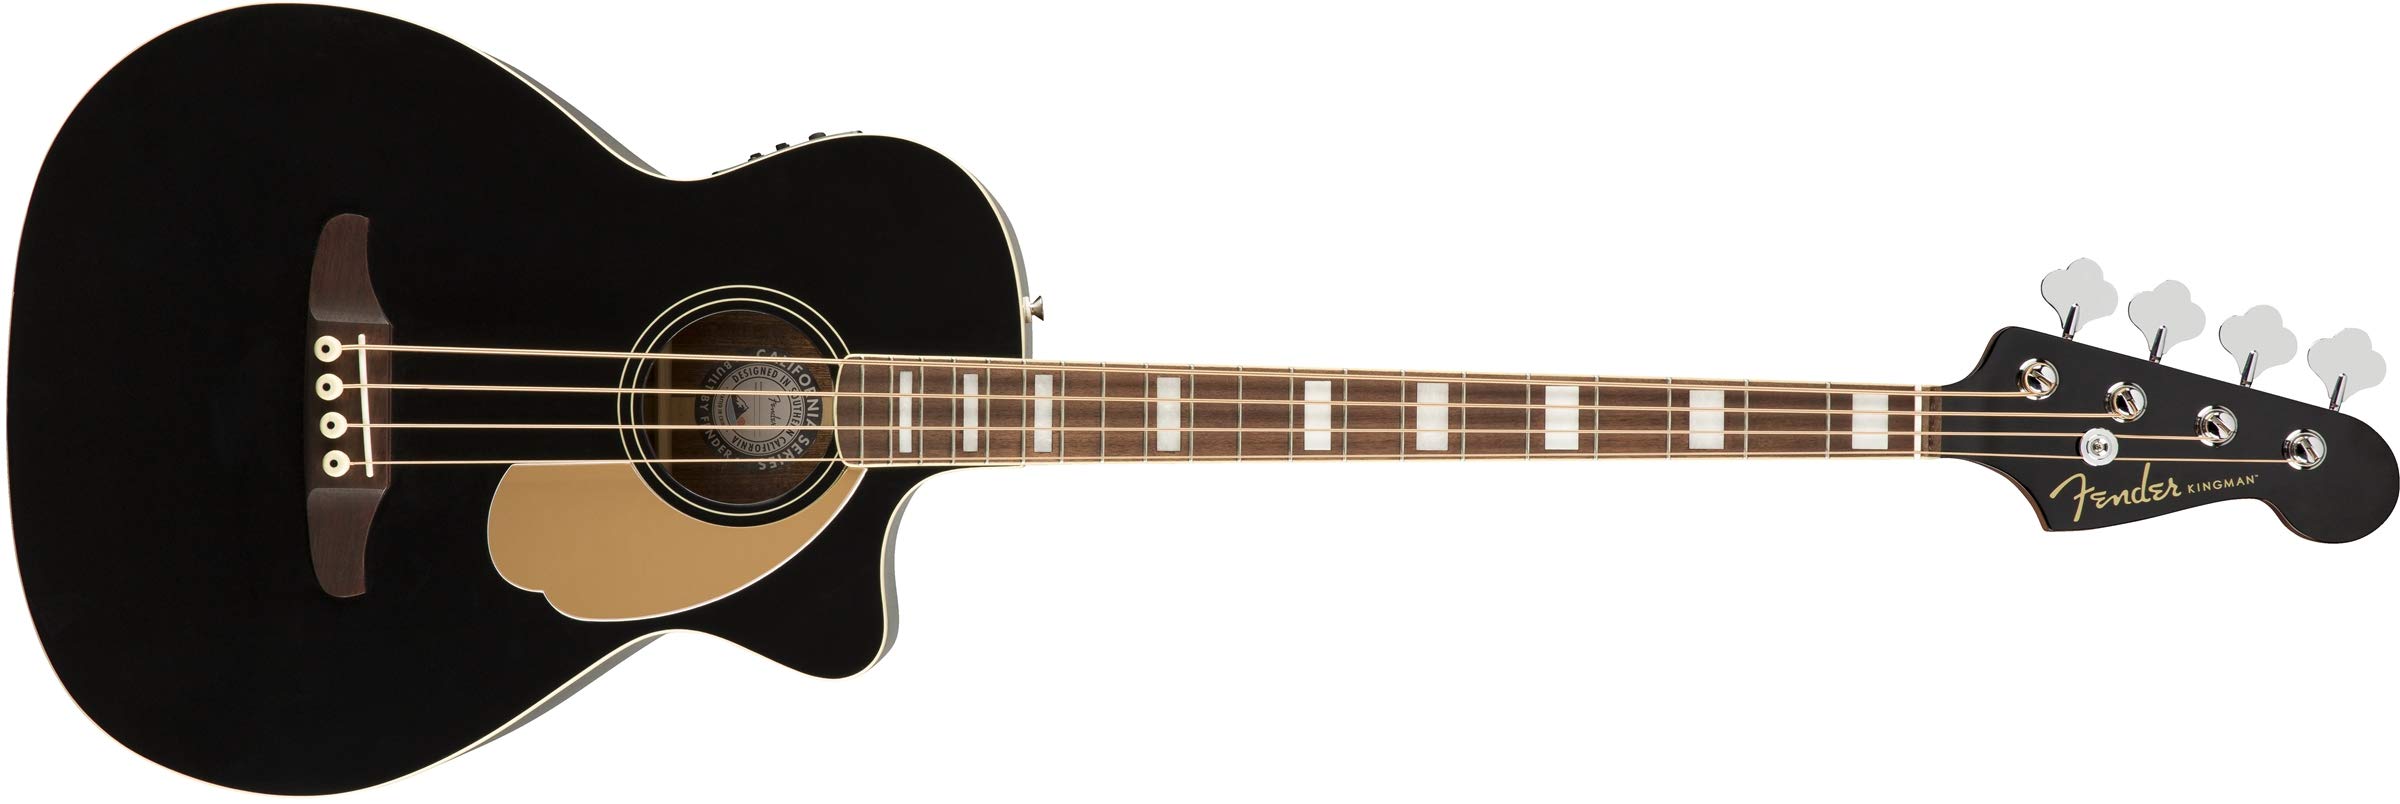 Fender جيتار اكوستيك باس من كينجمان (V2) - أسود - مع حقيبة - لوح أصابع الجوز